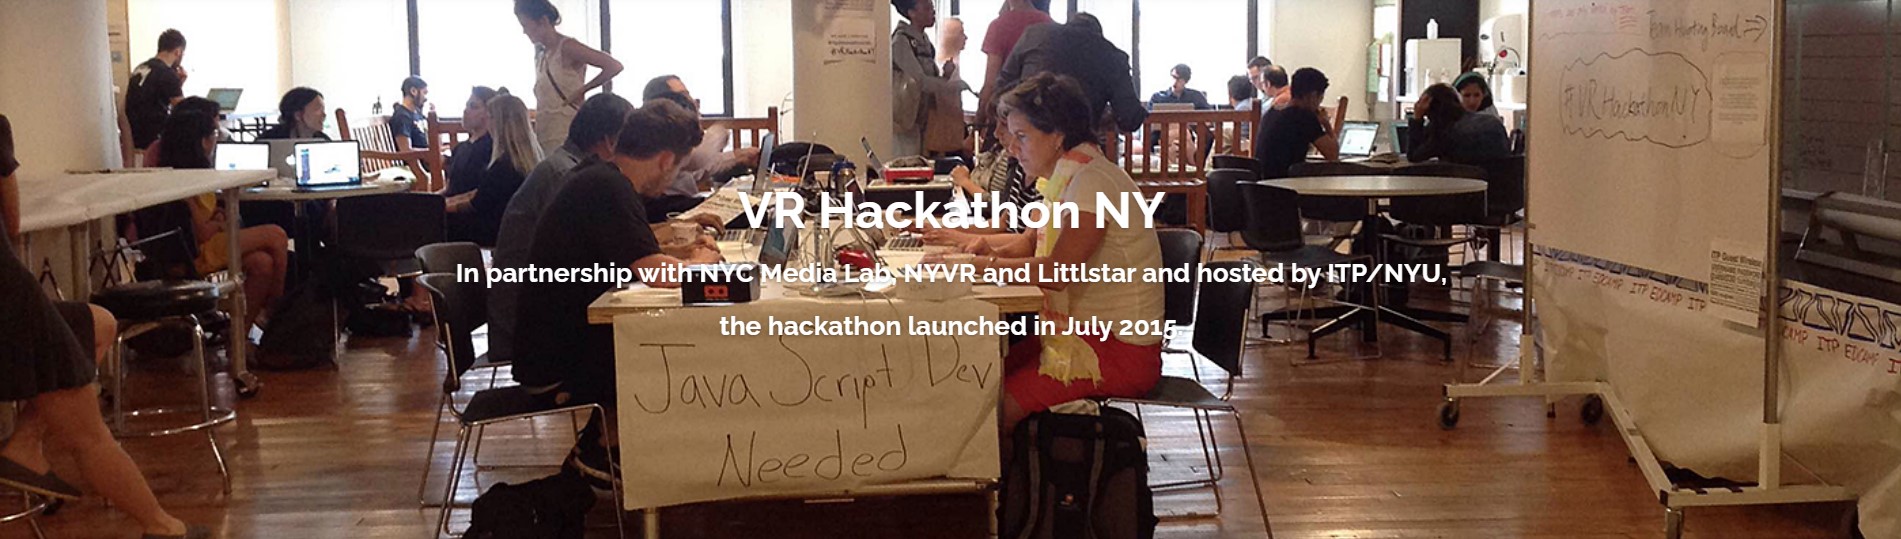 VR Hackathon Header Image